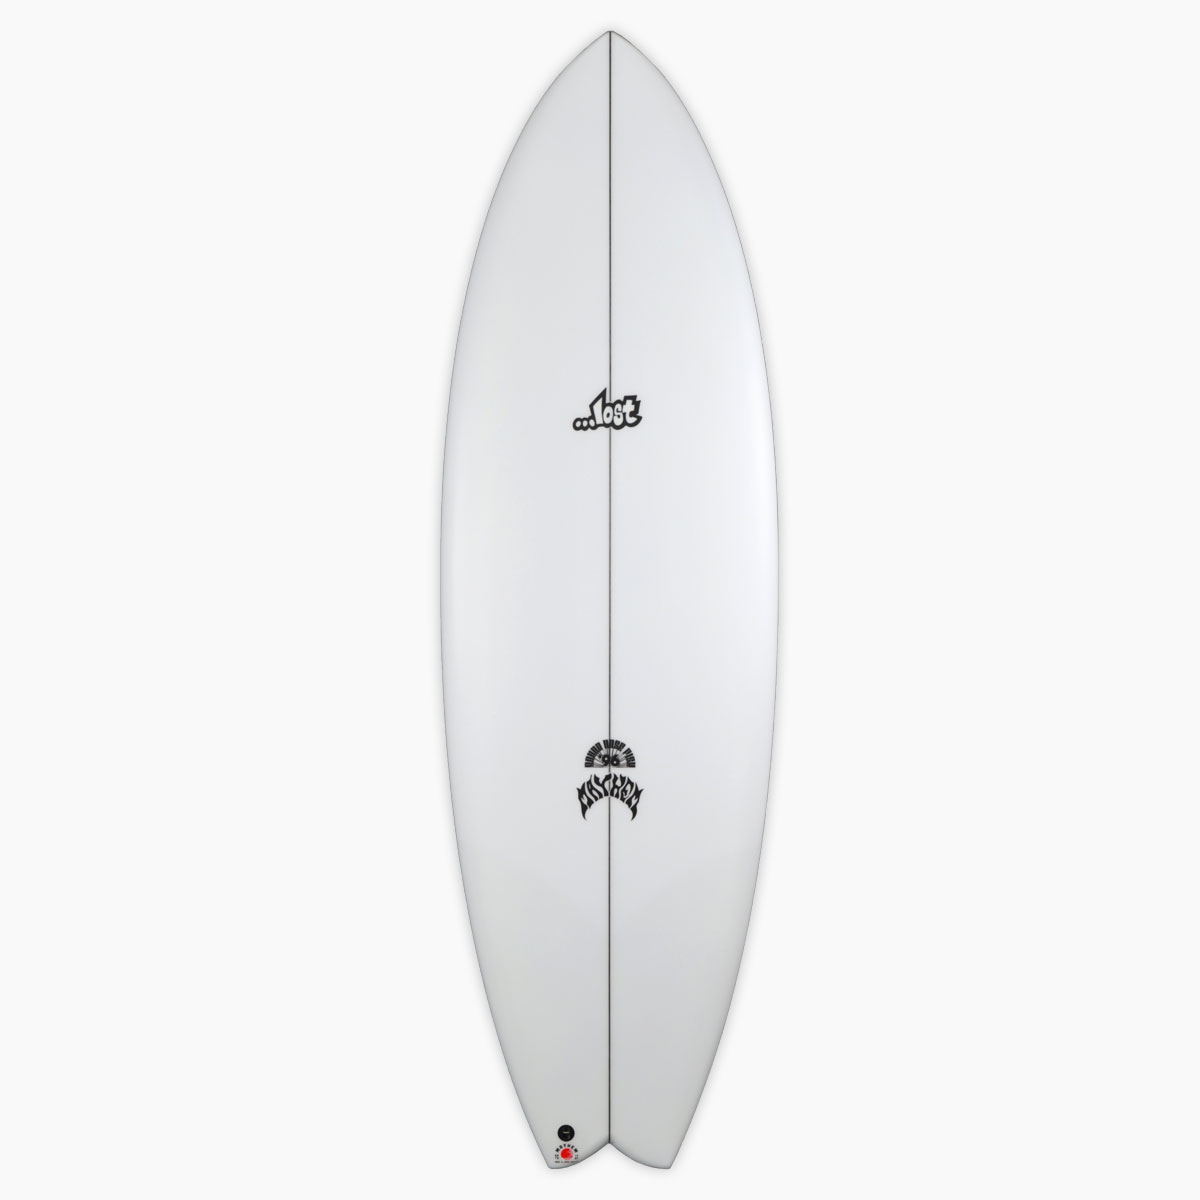 SurfBoardNet / ブランド:LOST SURFBOARDS モデル:RNF'96